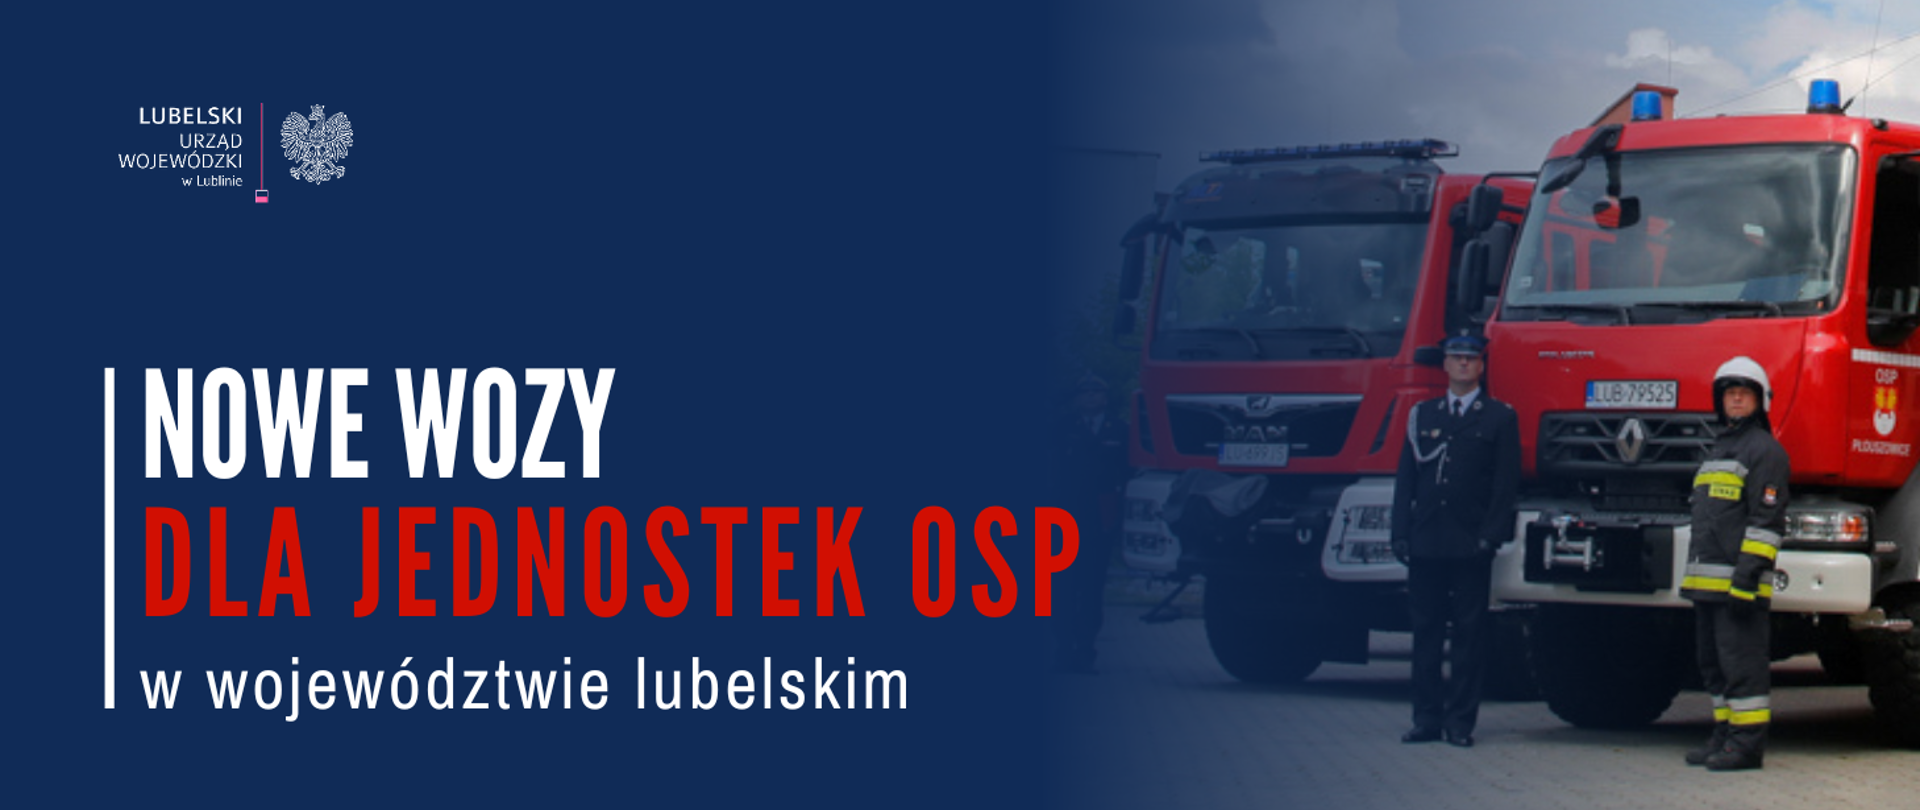 62 nowe wozy dla jednostek OSP w województwie lubelskim